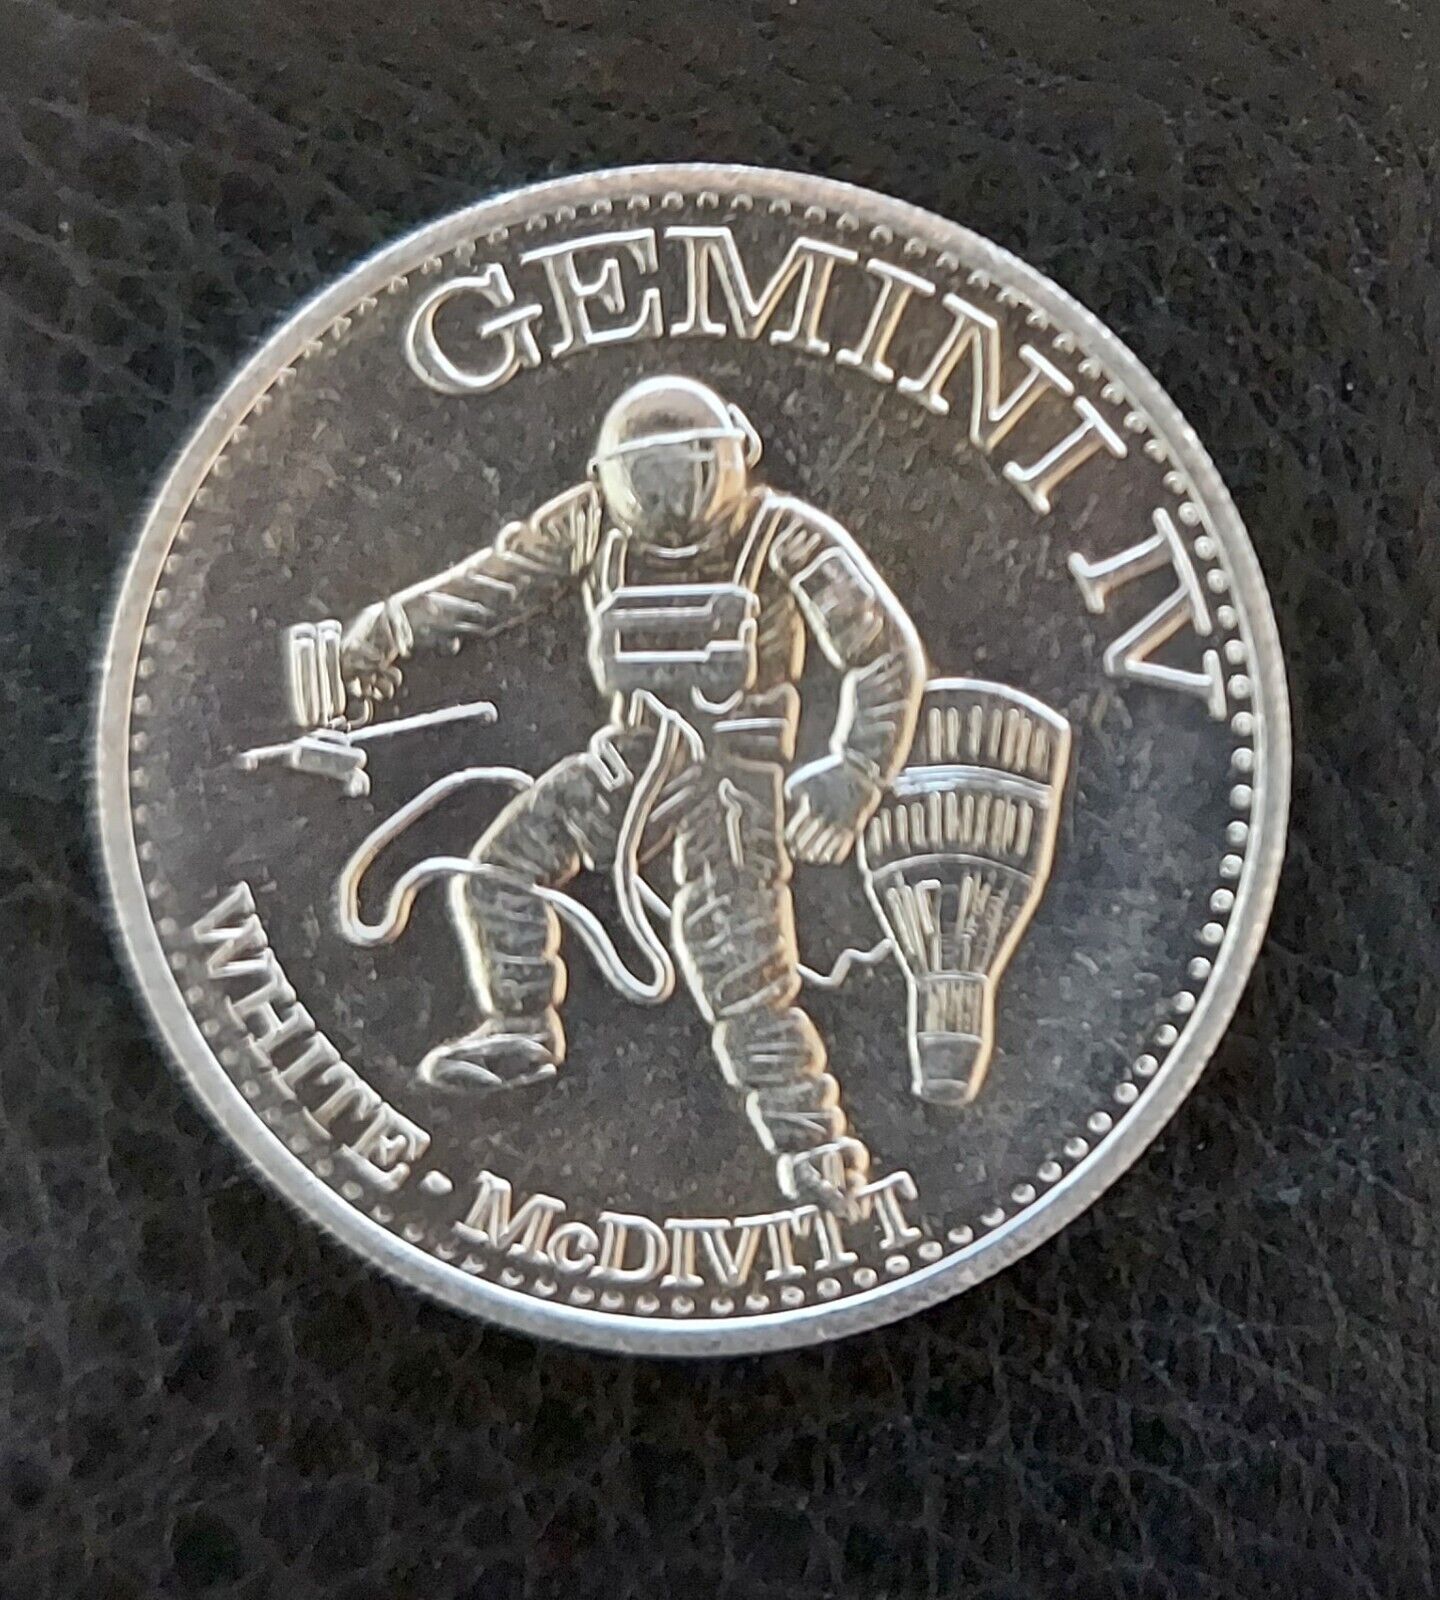 GEMINI IV Mission NASA Vintage Space Program Medallion Medal Challenge Coin